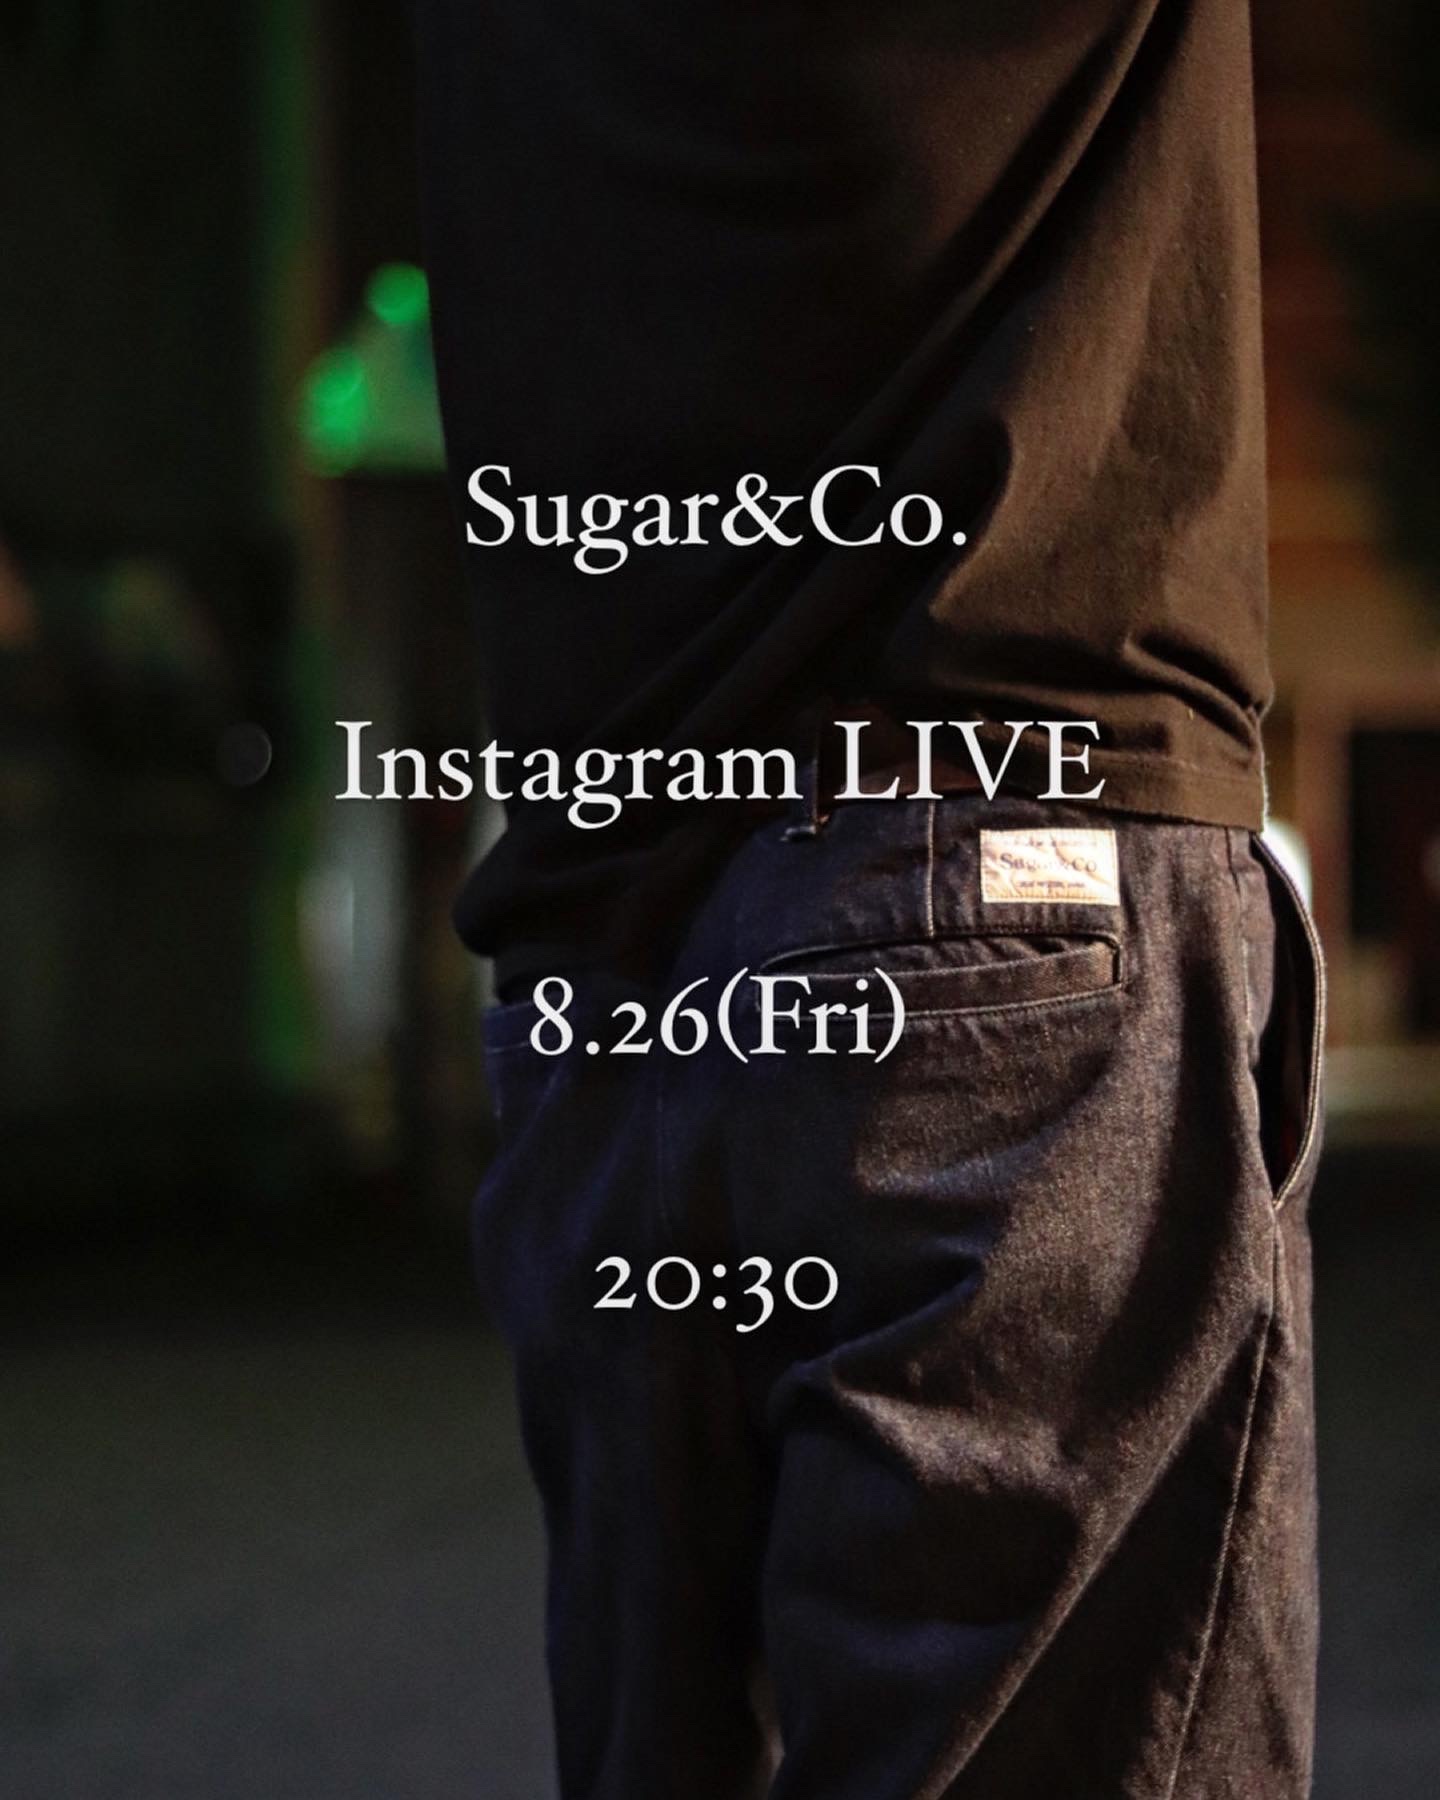 Sugar&Co.インスタライブのお知らせとハンサムシャツのご紹介です！！